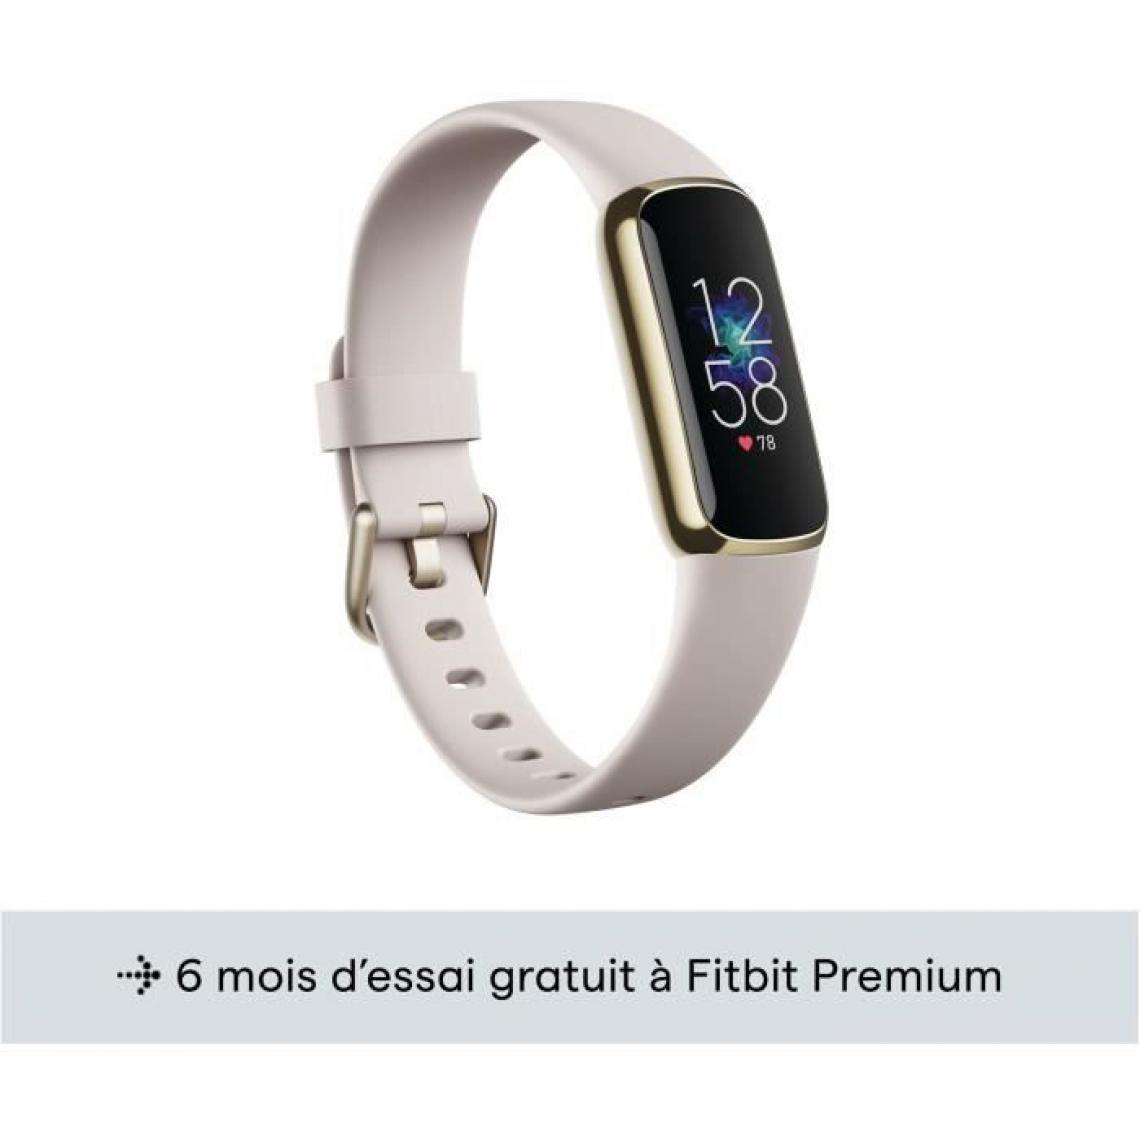 Fitbit - FITBIT - Luxe blanc lunaire - Acier inoxydable or pâle - Montre connectée